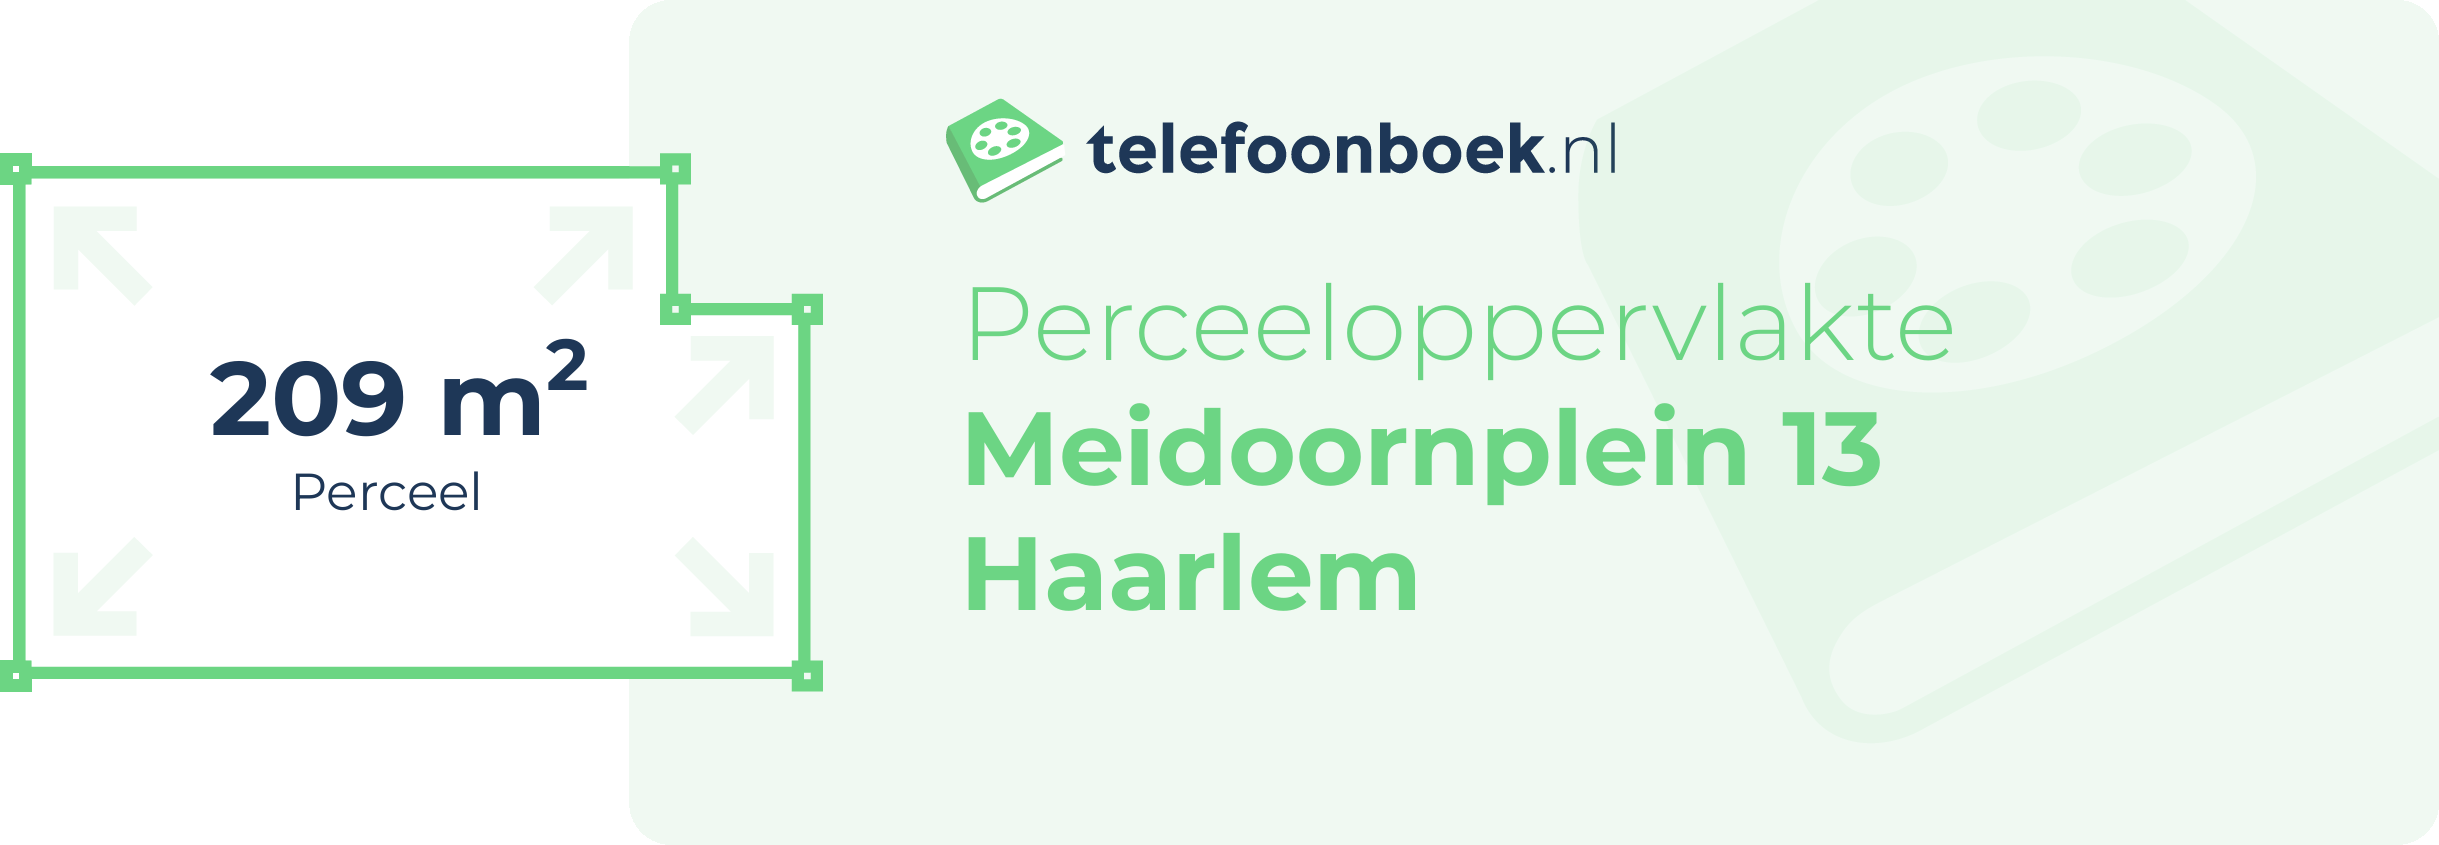 Perceeloppervlakte Meidoornplein 13 Haarlem